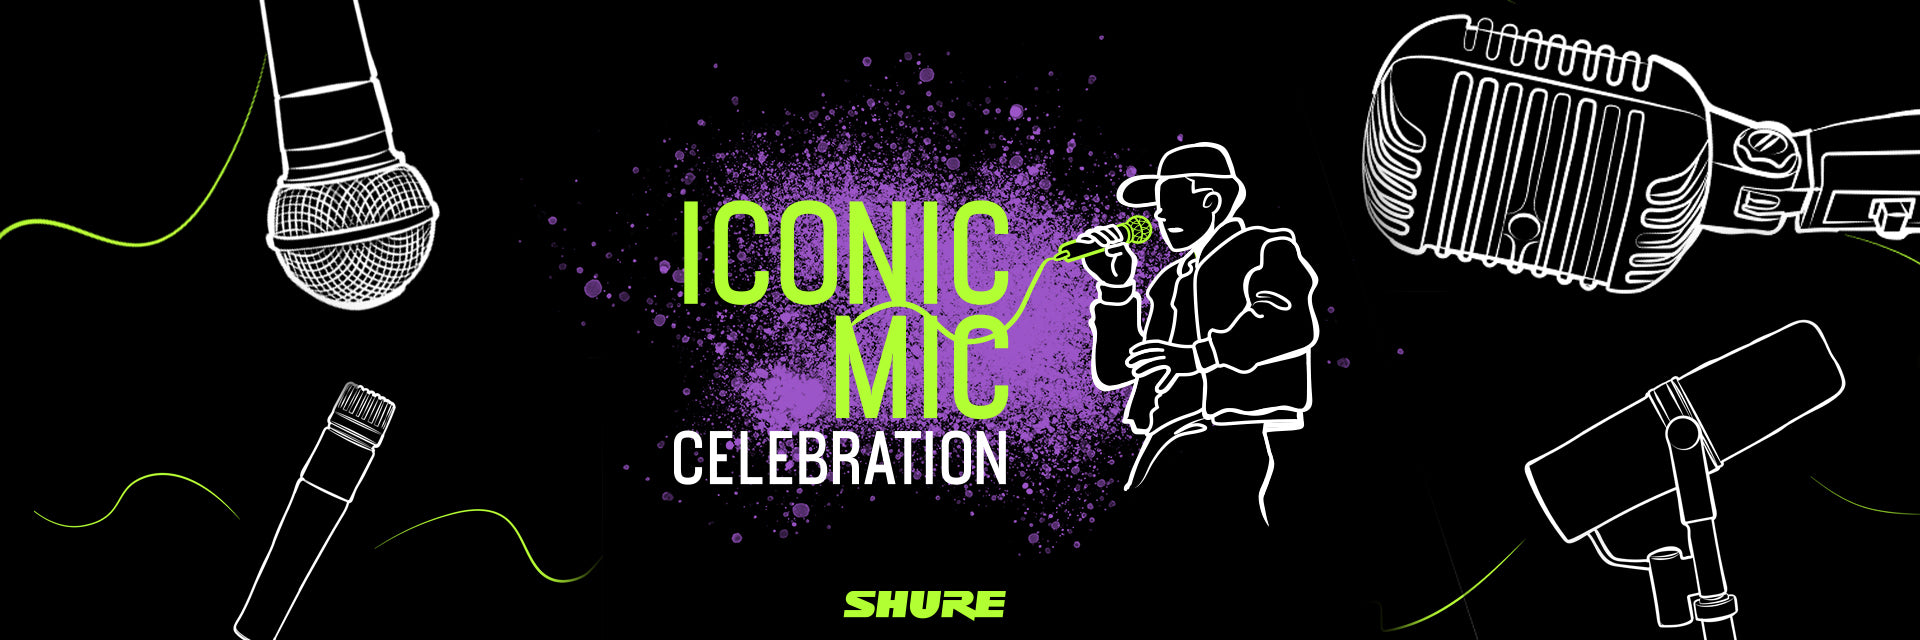 Iconic Mic Celebration